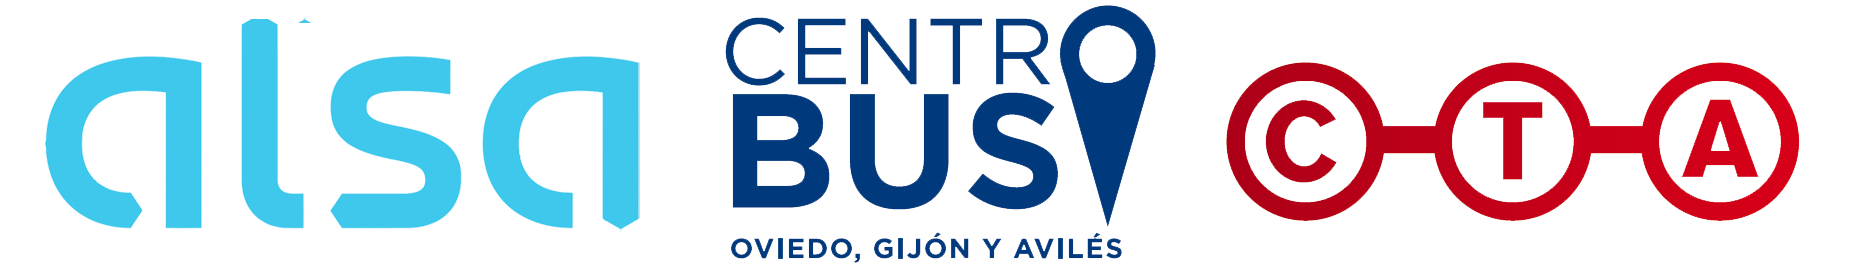 Publicidad en Autobuses ALSA y CTA